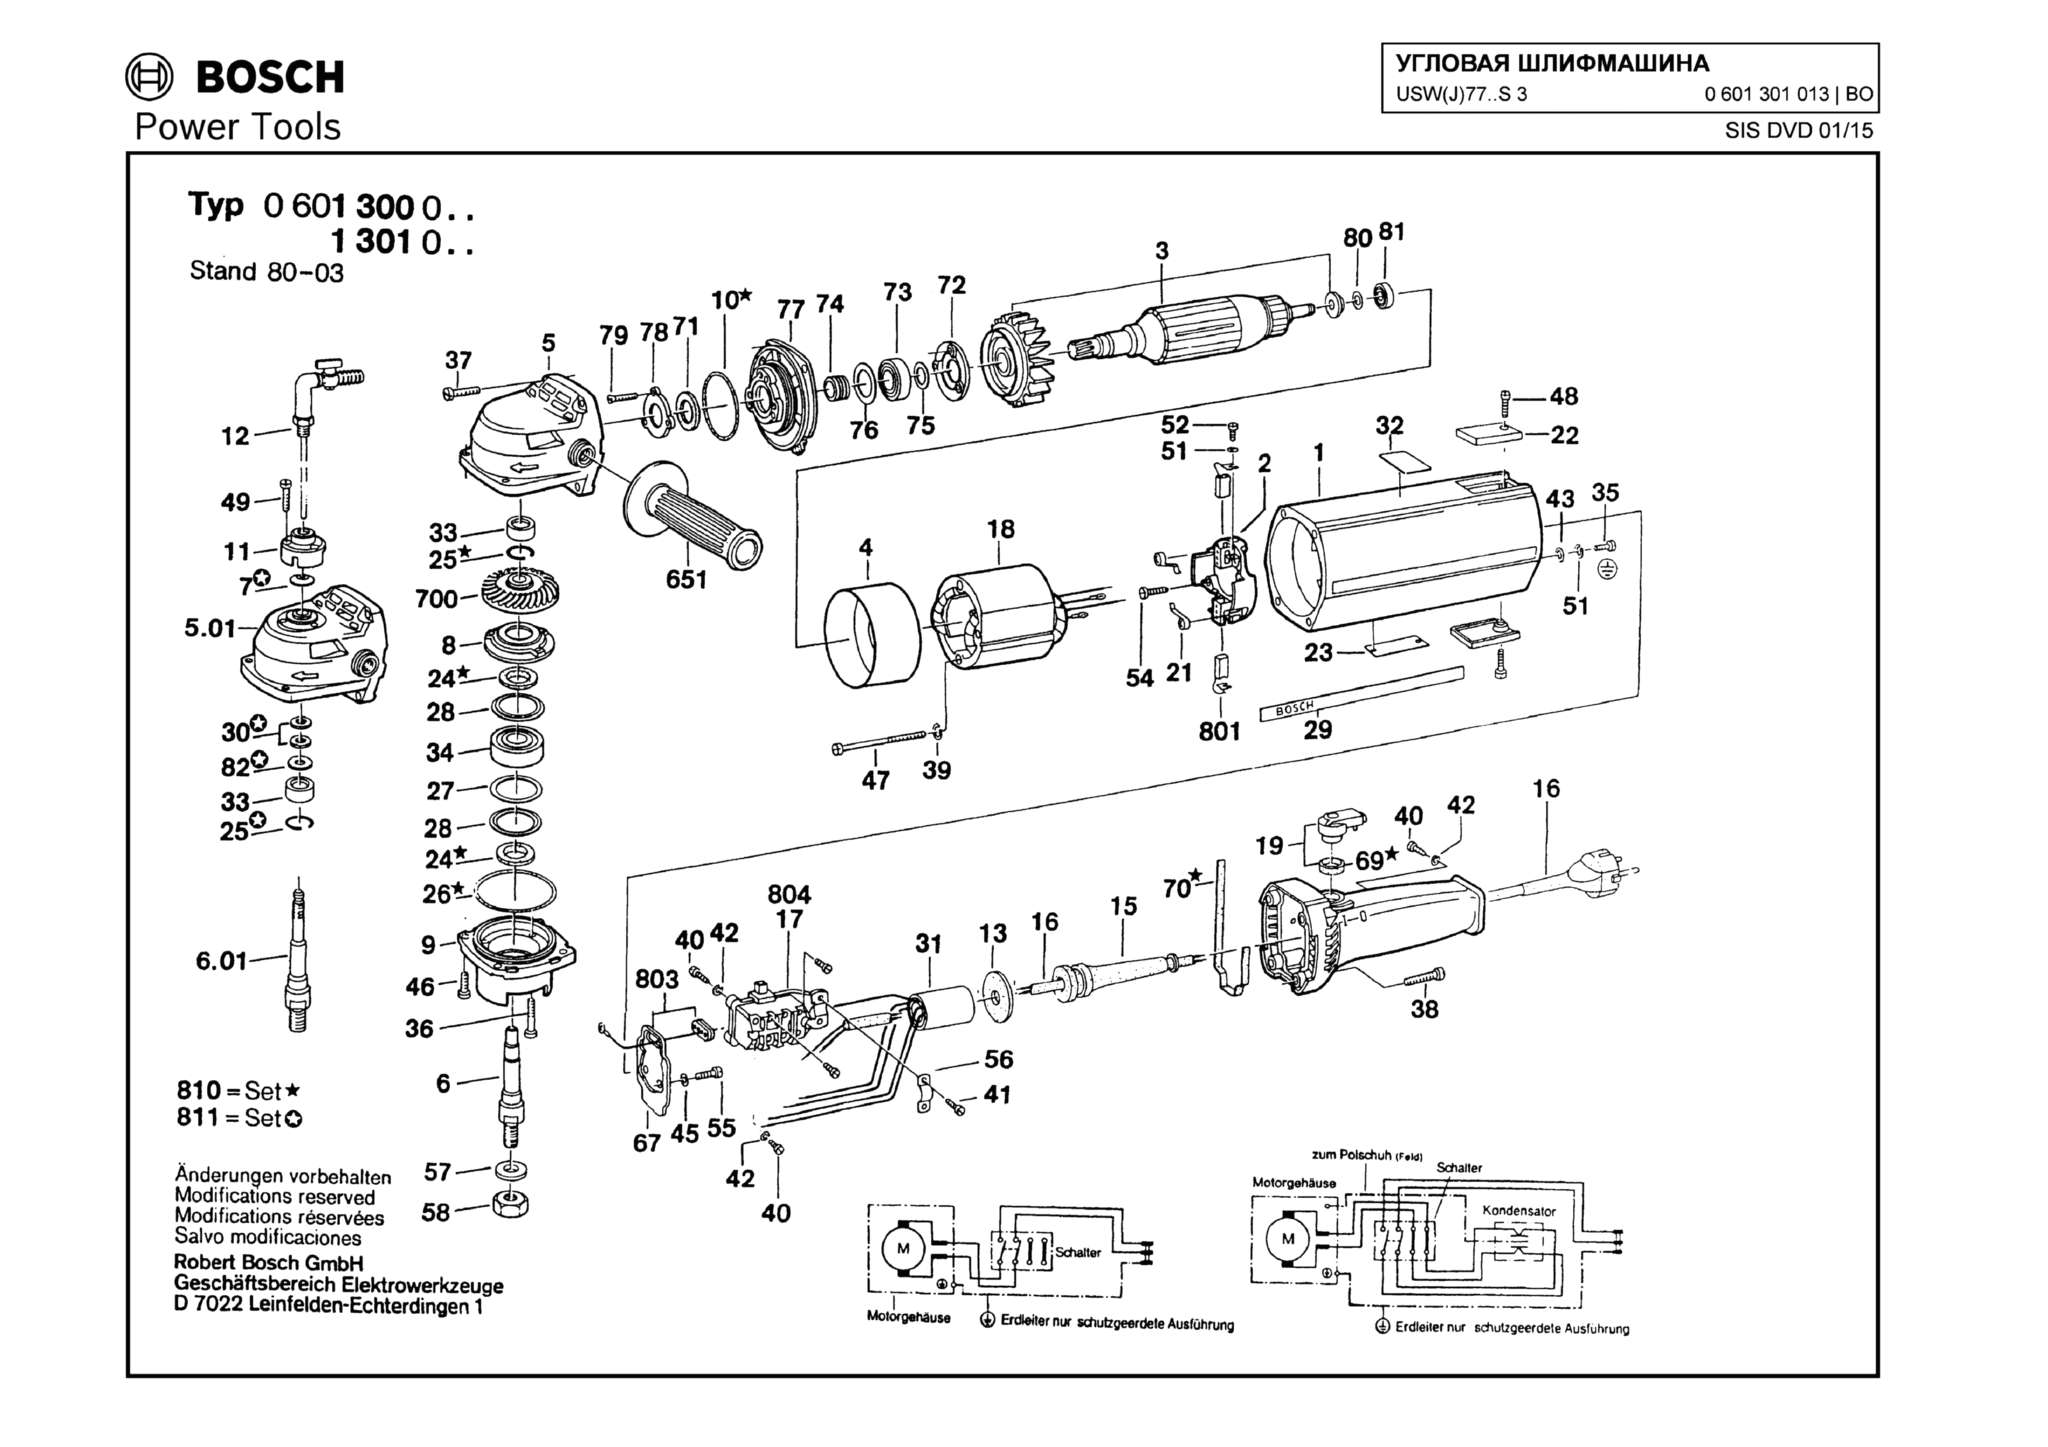 Запчасти, схема и деталировка Bosch USW(J)77..S 3 (ТИП 0601301013)